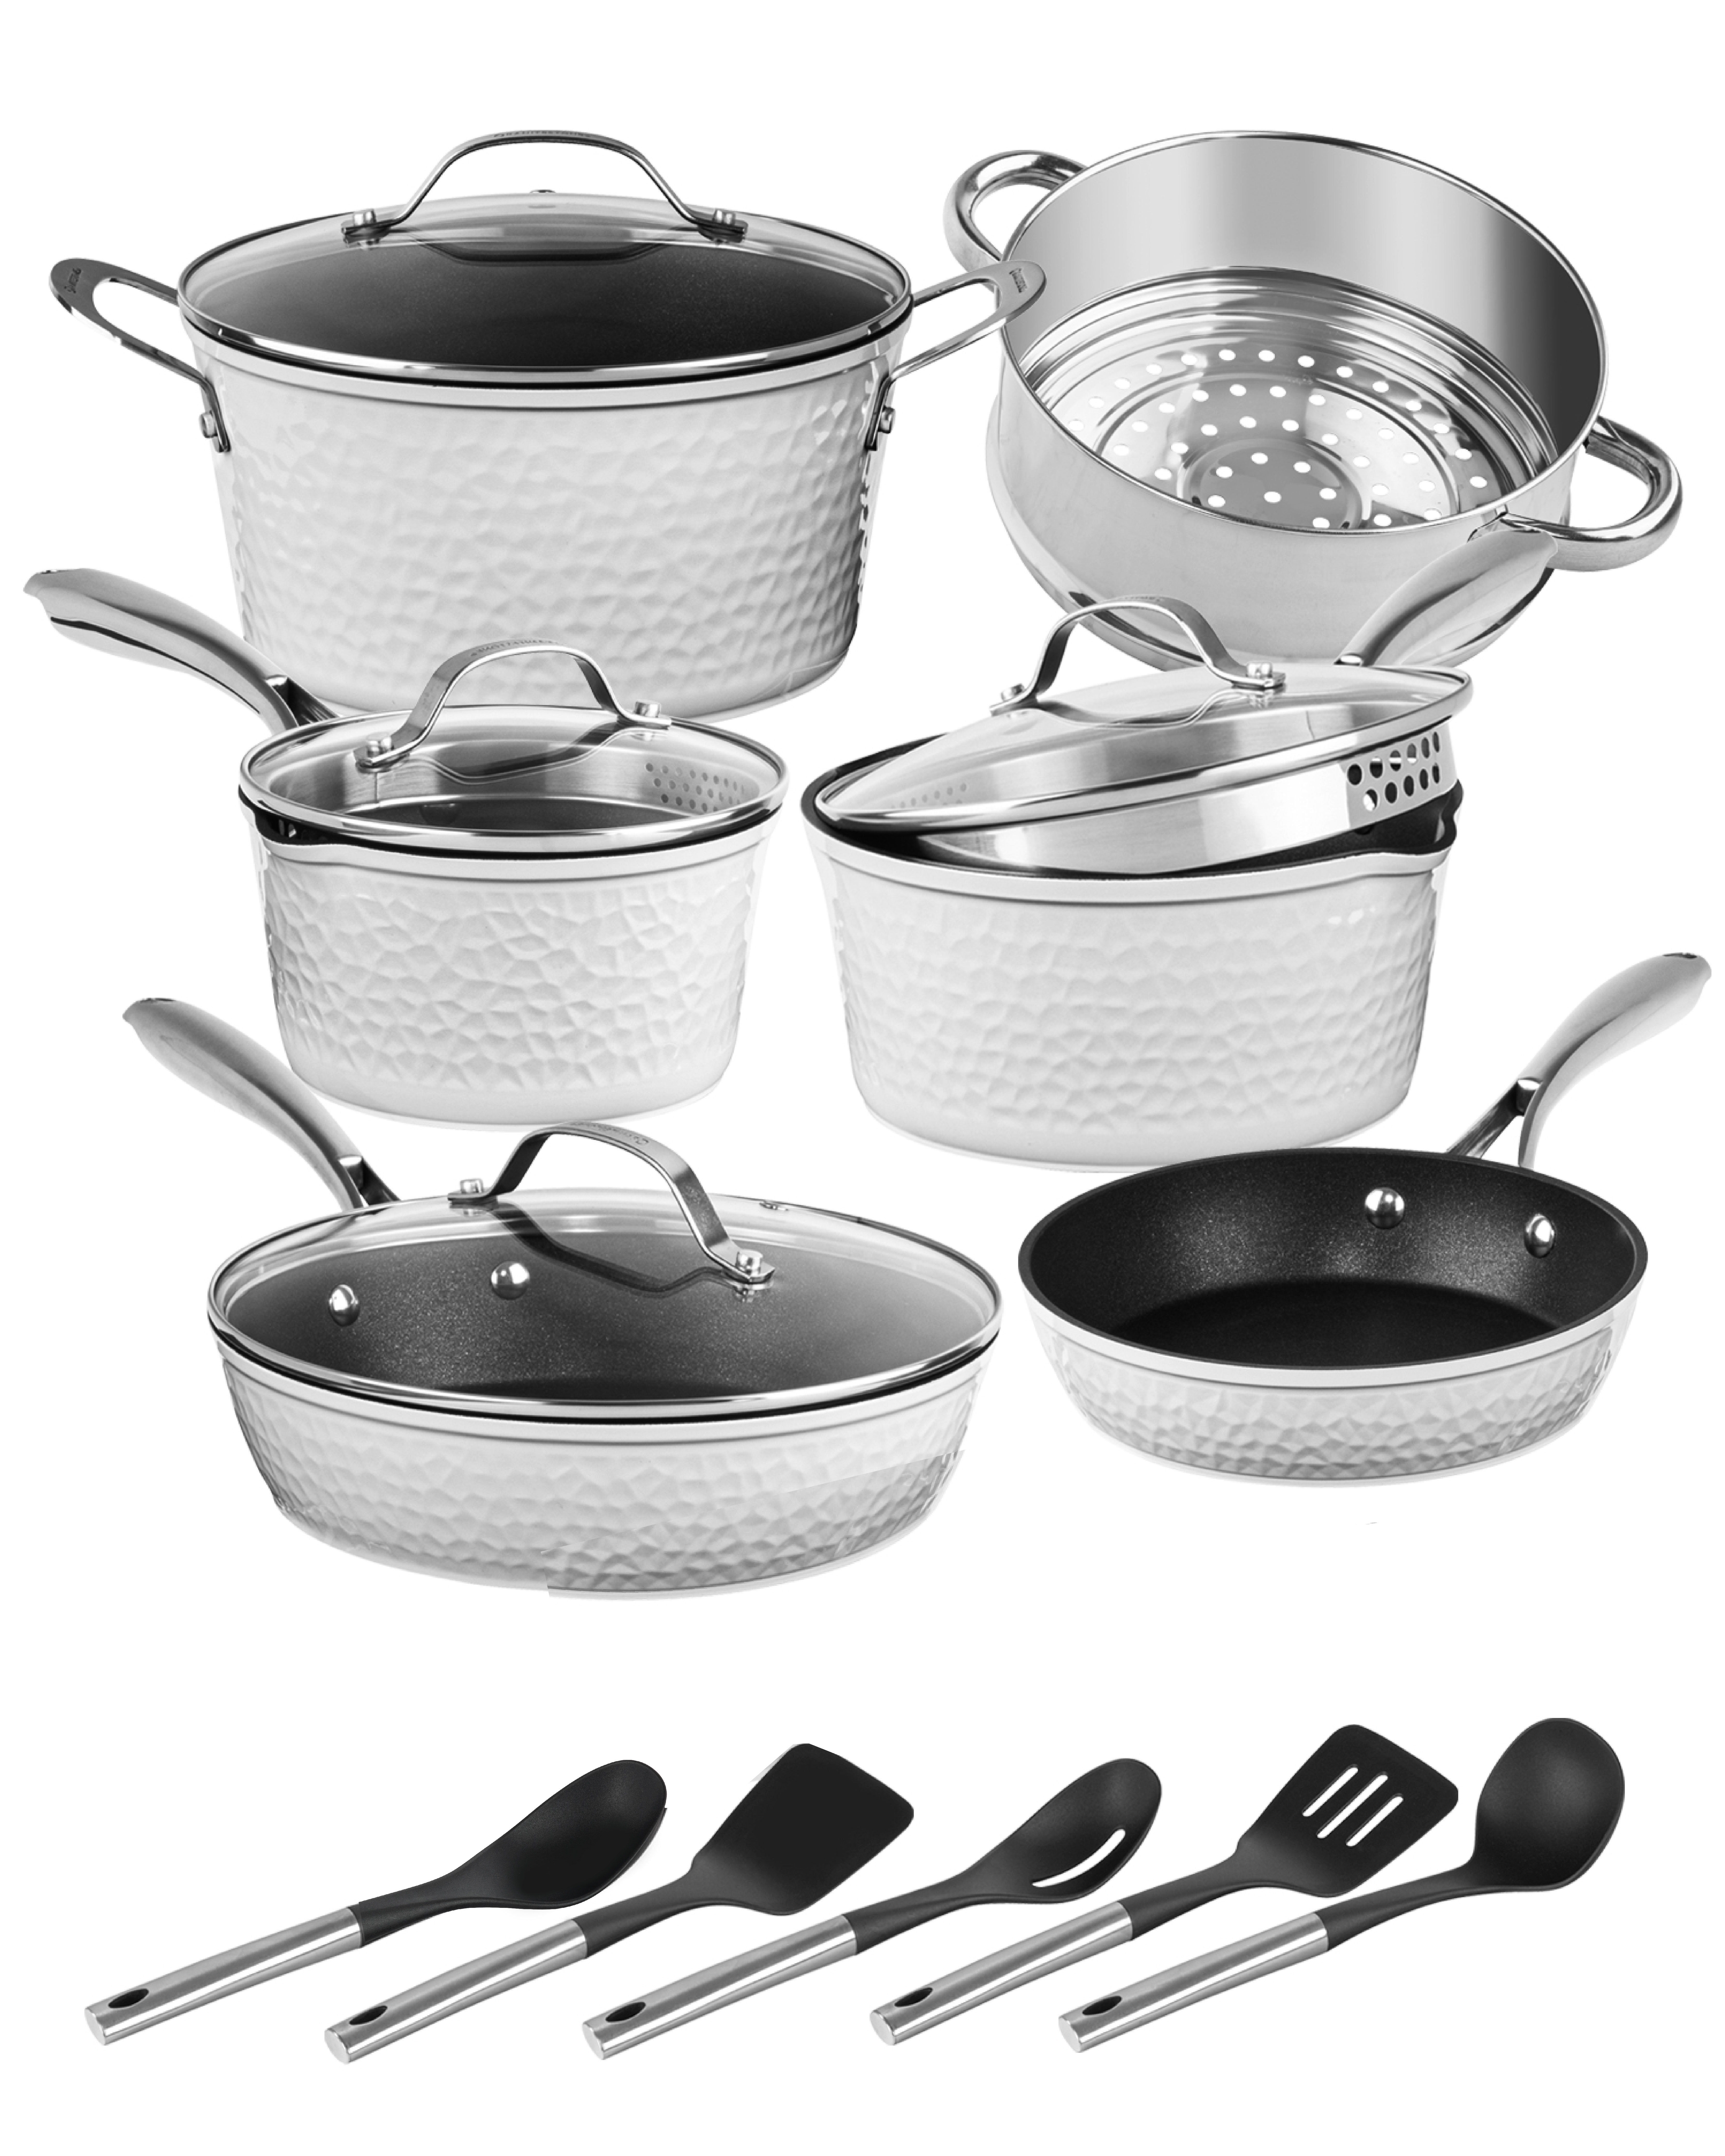 https://assets.wfcdn.com/im/79200416/compr-r85/2561/256145818/granitestone-charleston-collection-hammered-white-15-piece-nonstick-cookware-set-with-utensils.jpg